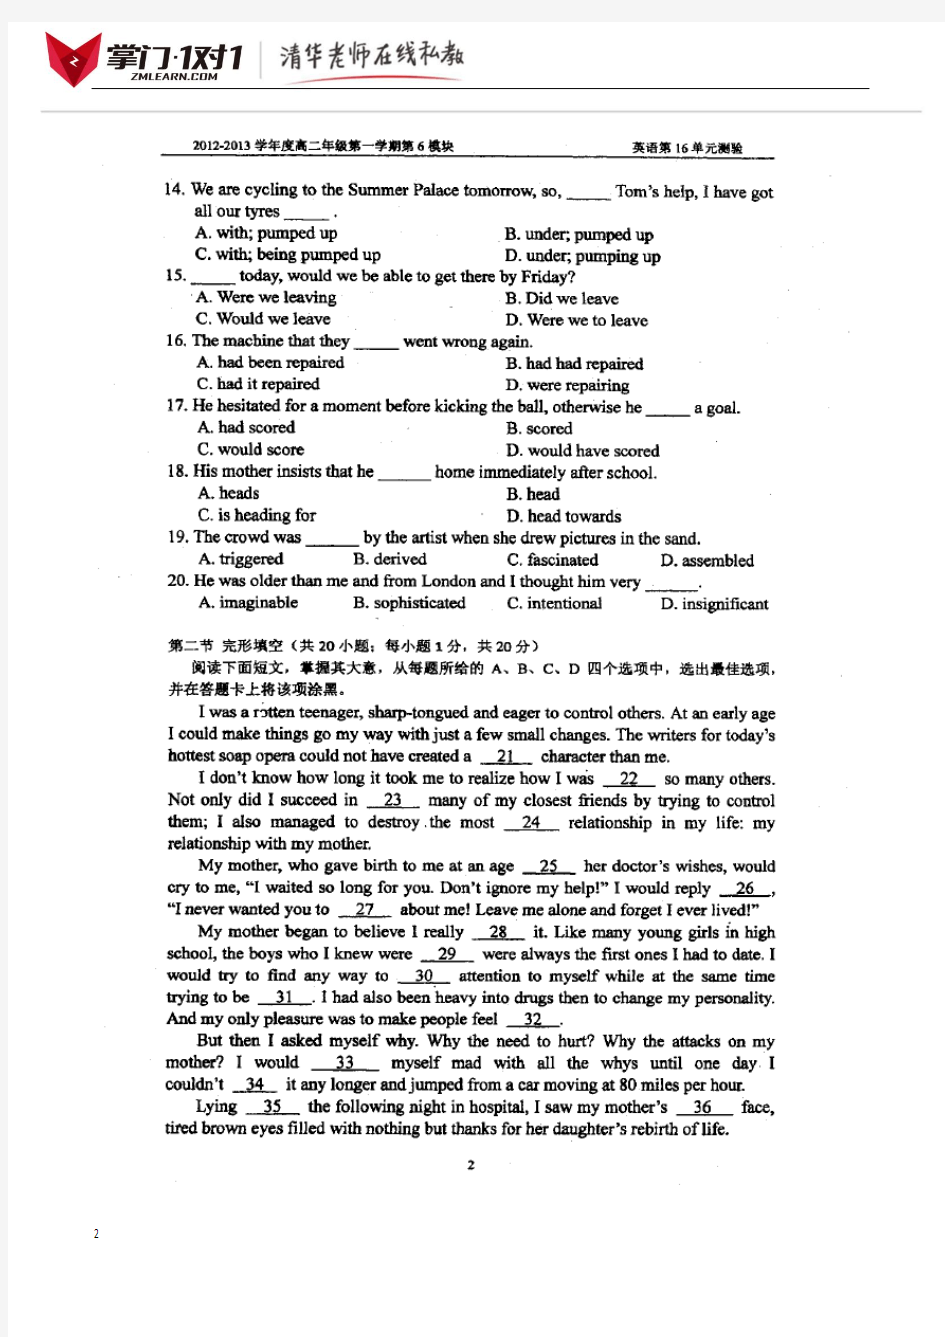 北京四中高二第二次月考英语试卷(1)-掌门1对 1